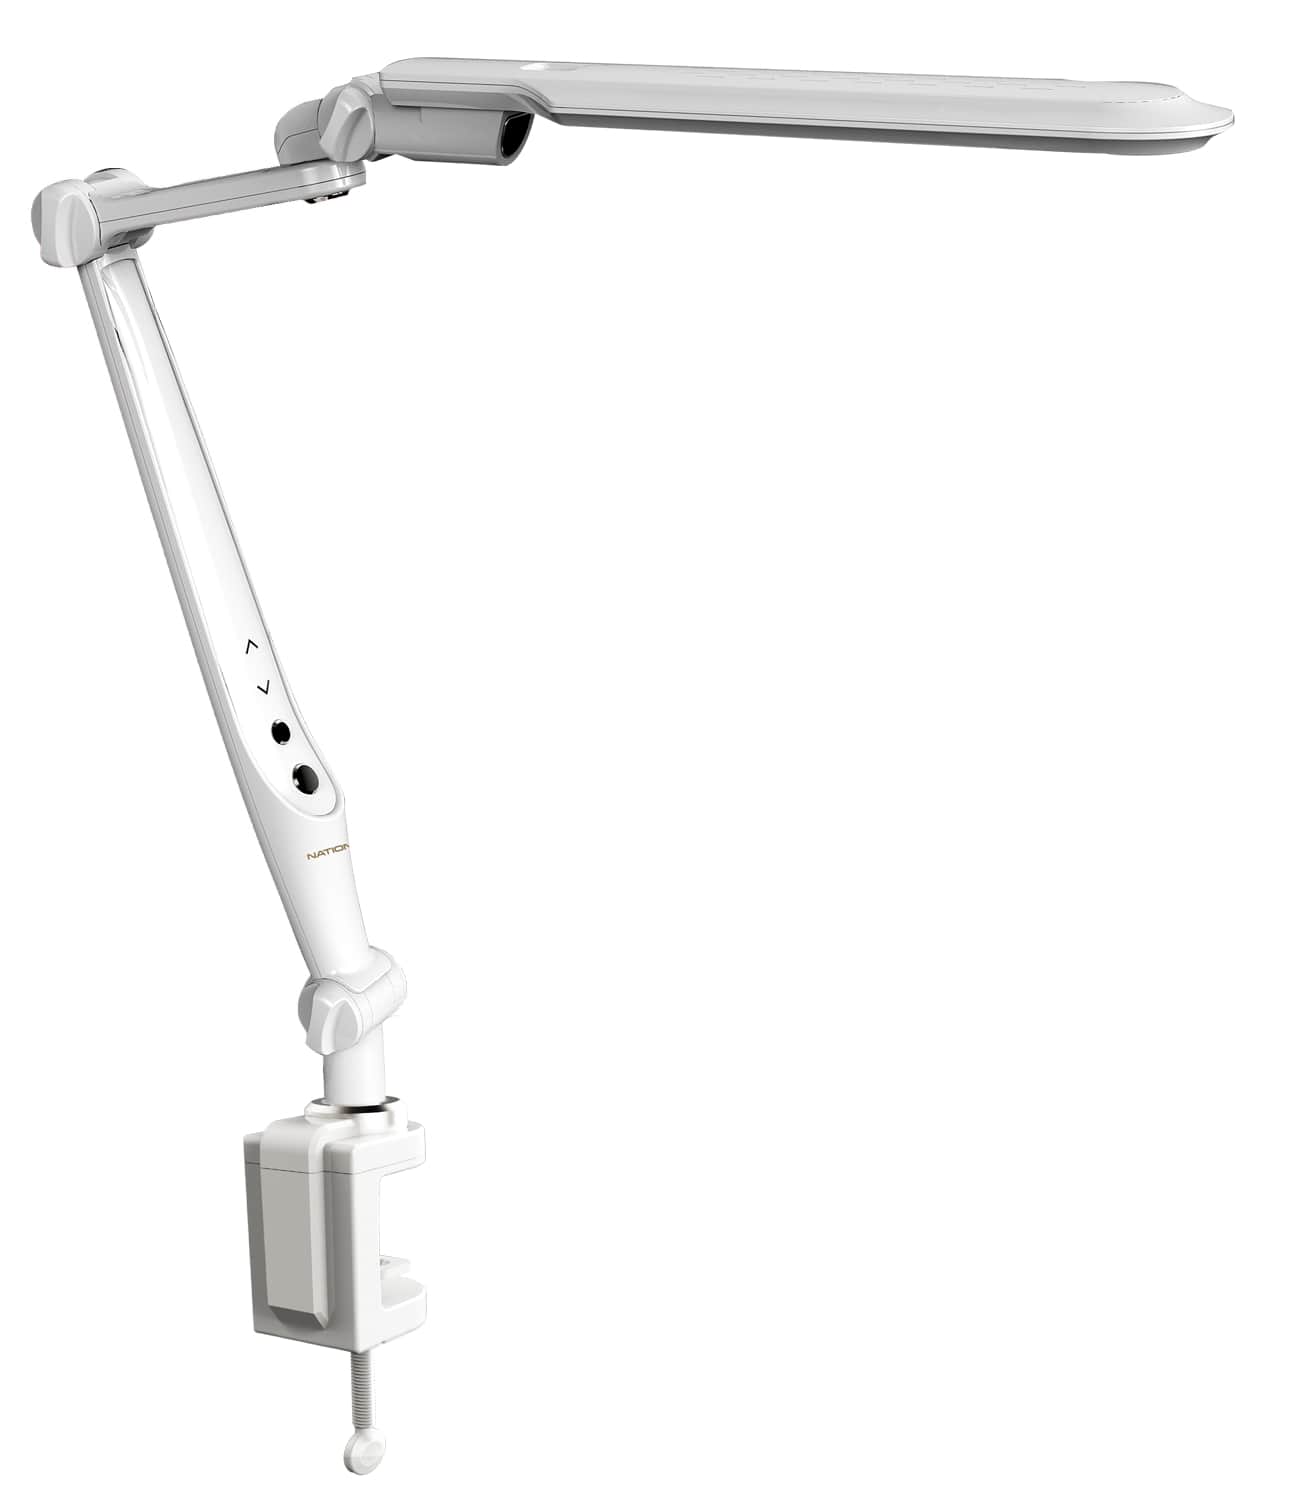 Картинка Настольная лампа светодиодная NATIONAL NL-71LED по разумной цене купить в интернет магазине mall.su